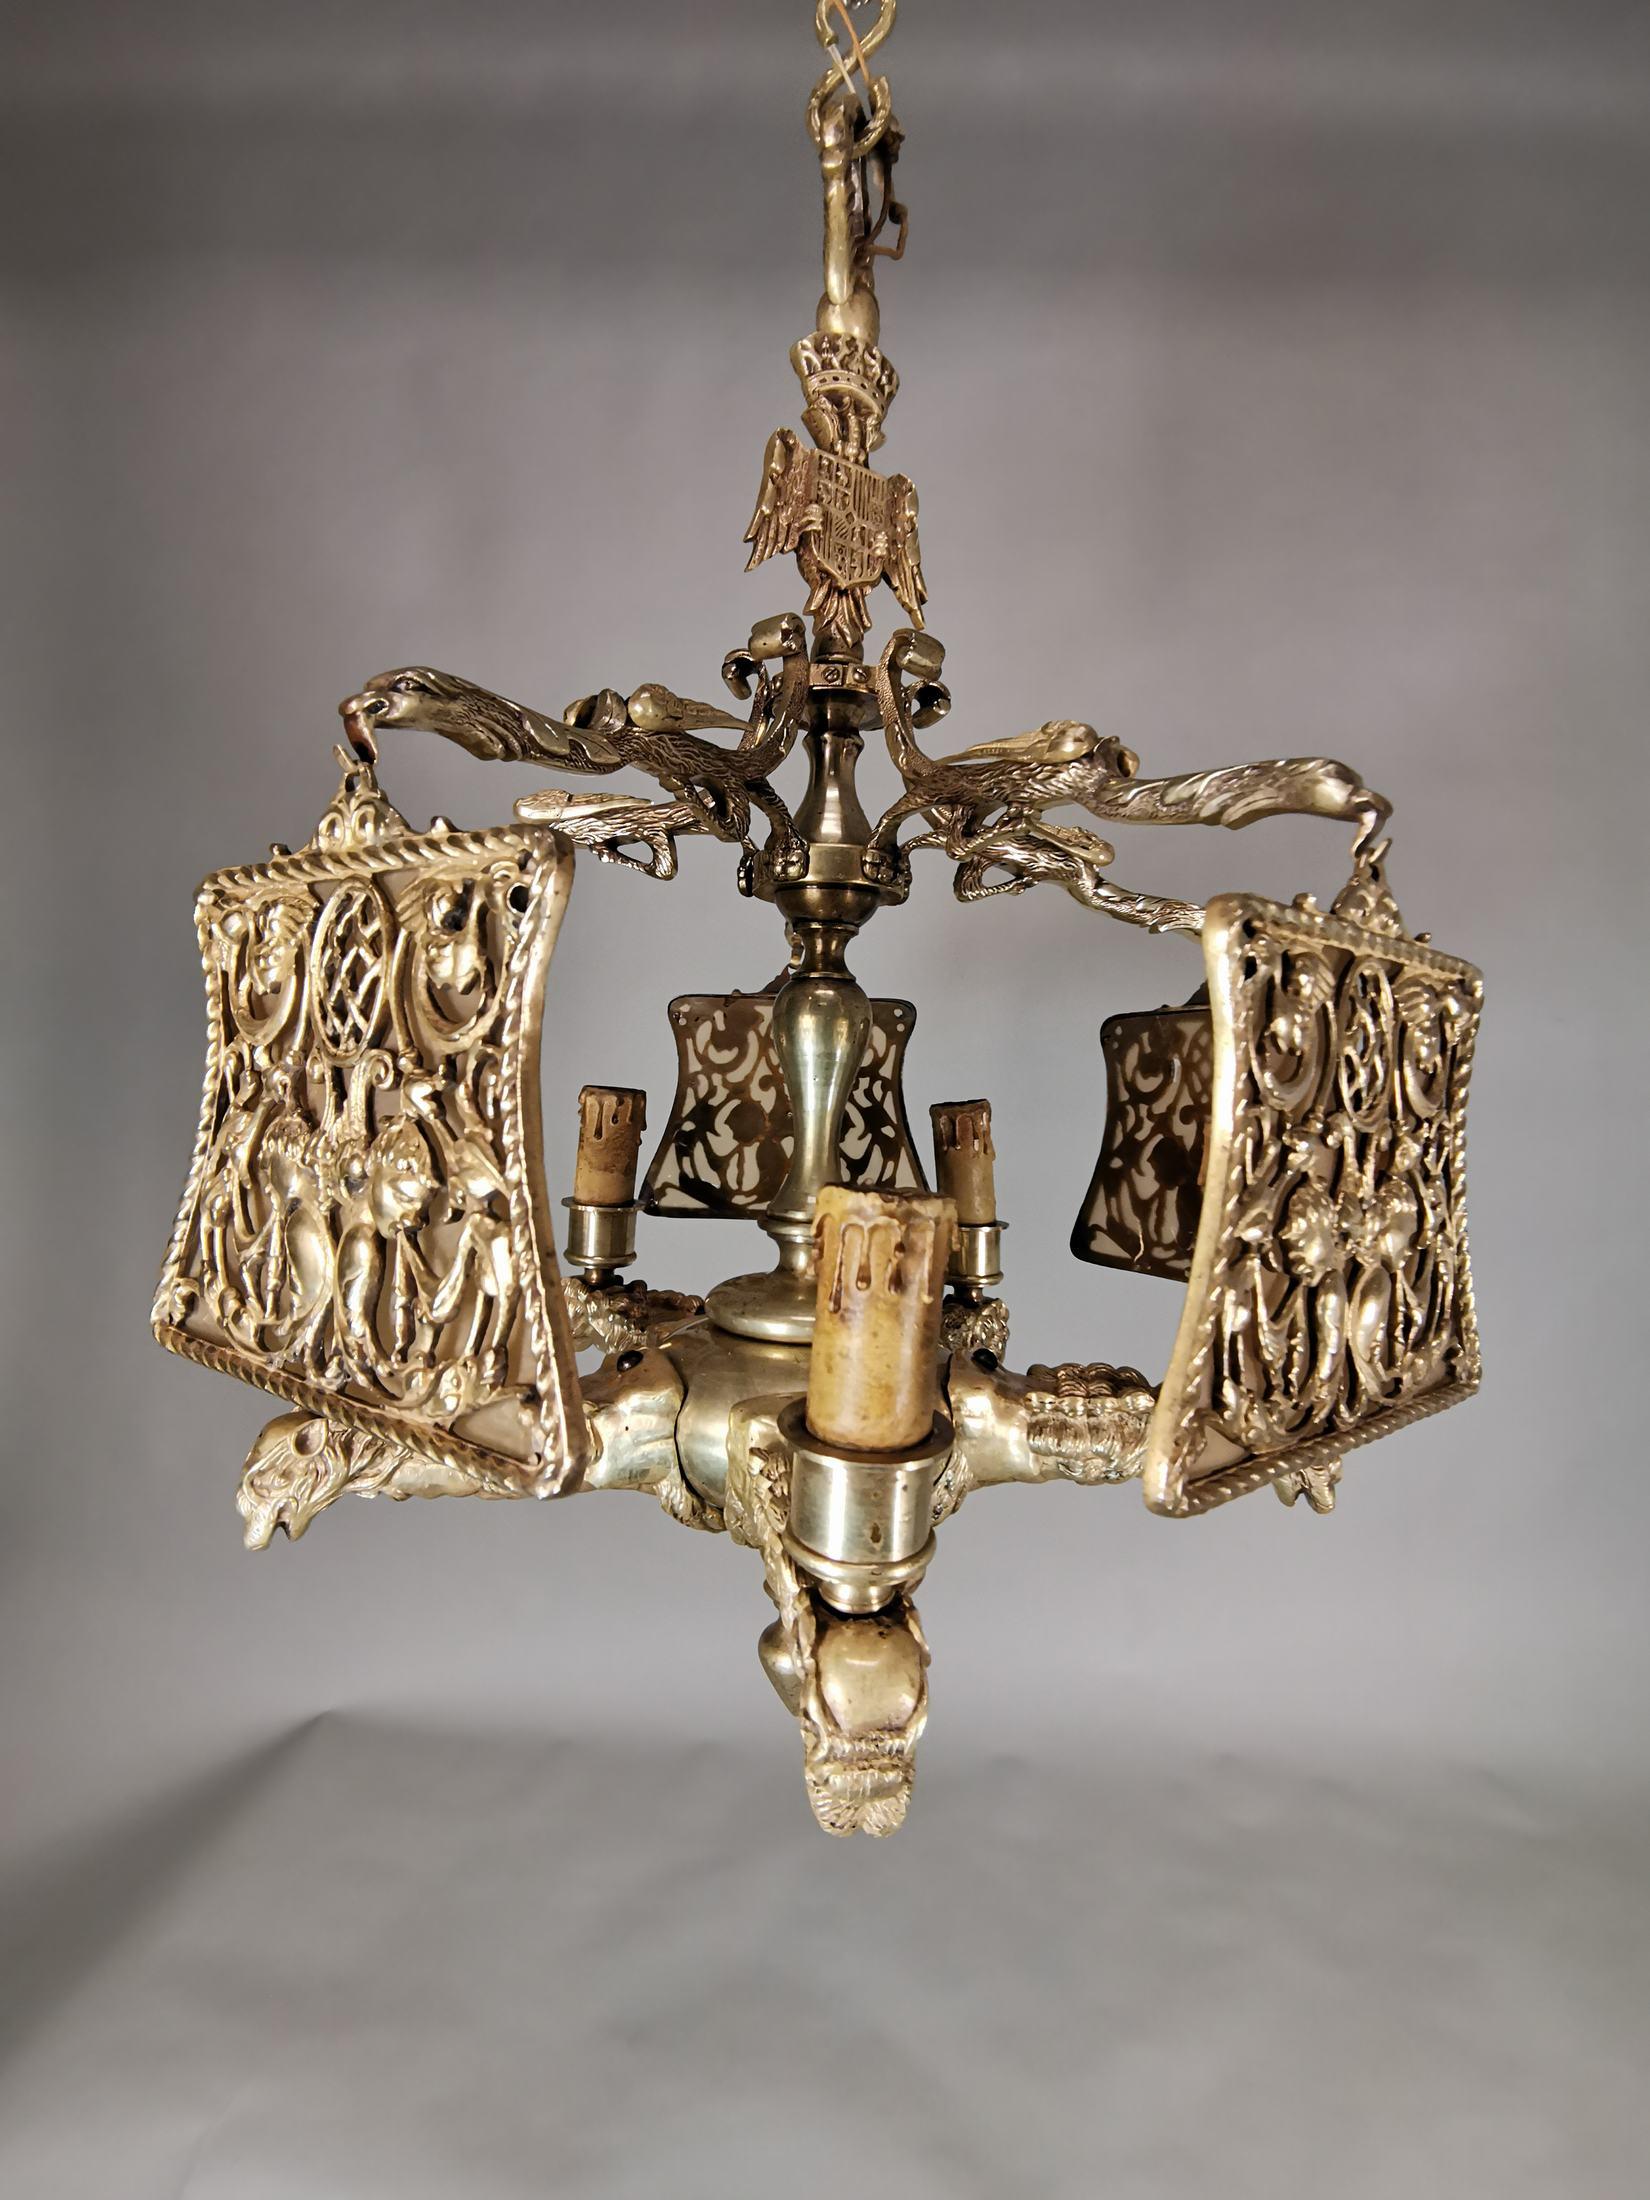 Importante lampe en bronze doré du 19e siècle
Décorée de dragons et couronnée d'un bouclier nobiliaire, elle pèse 20 kg et mesure 70 cm de haut et 50 cm de diamètre.